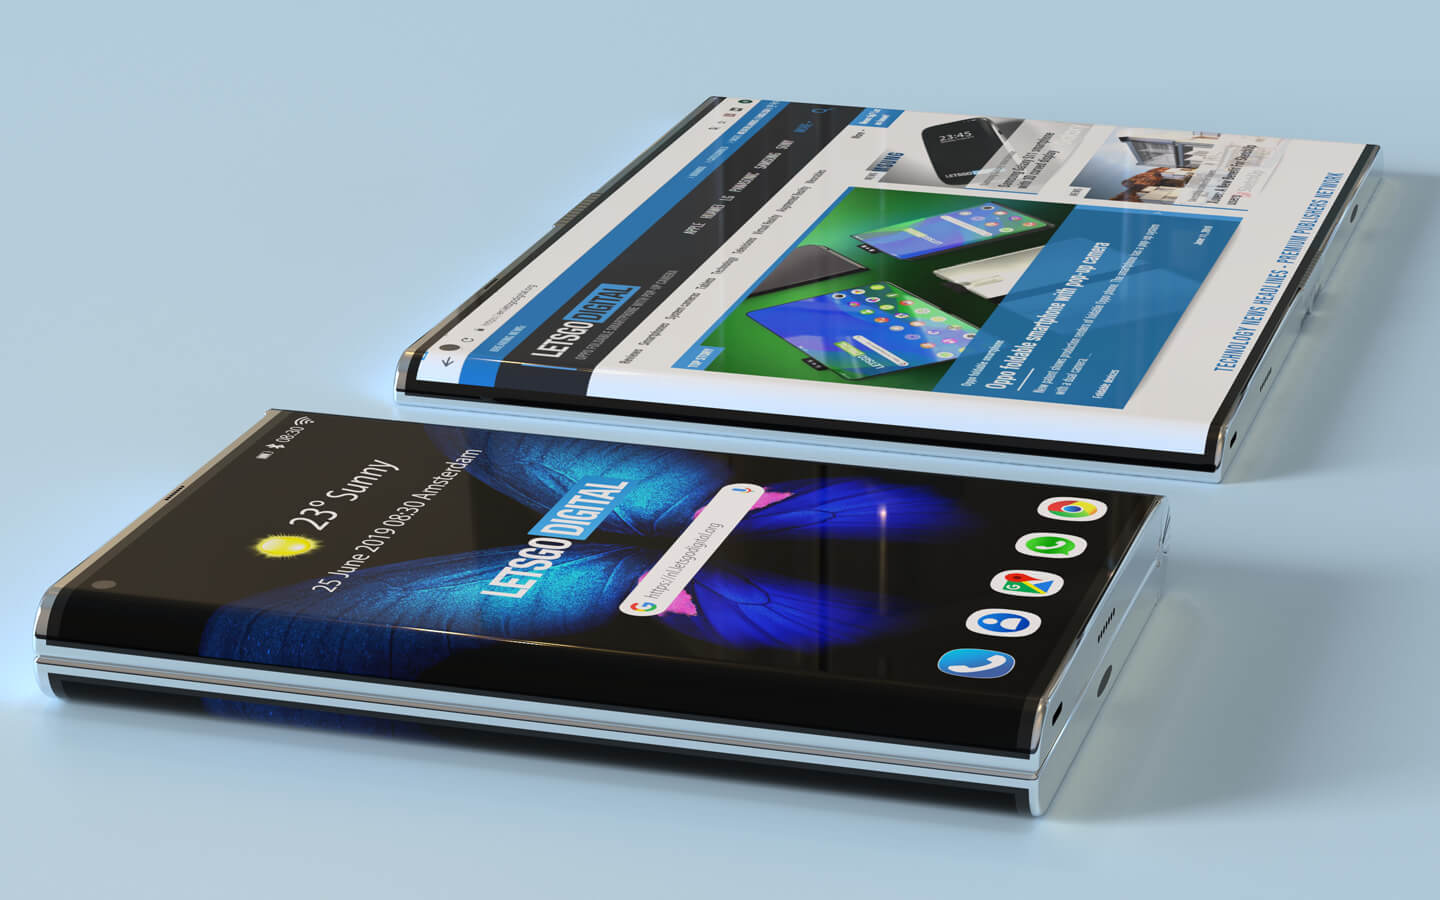 Concept thiết bị màn
hình gập ra ngoài như trên Huawei Mate X